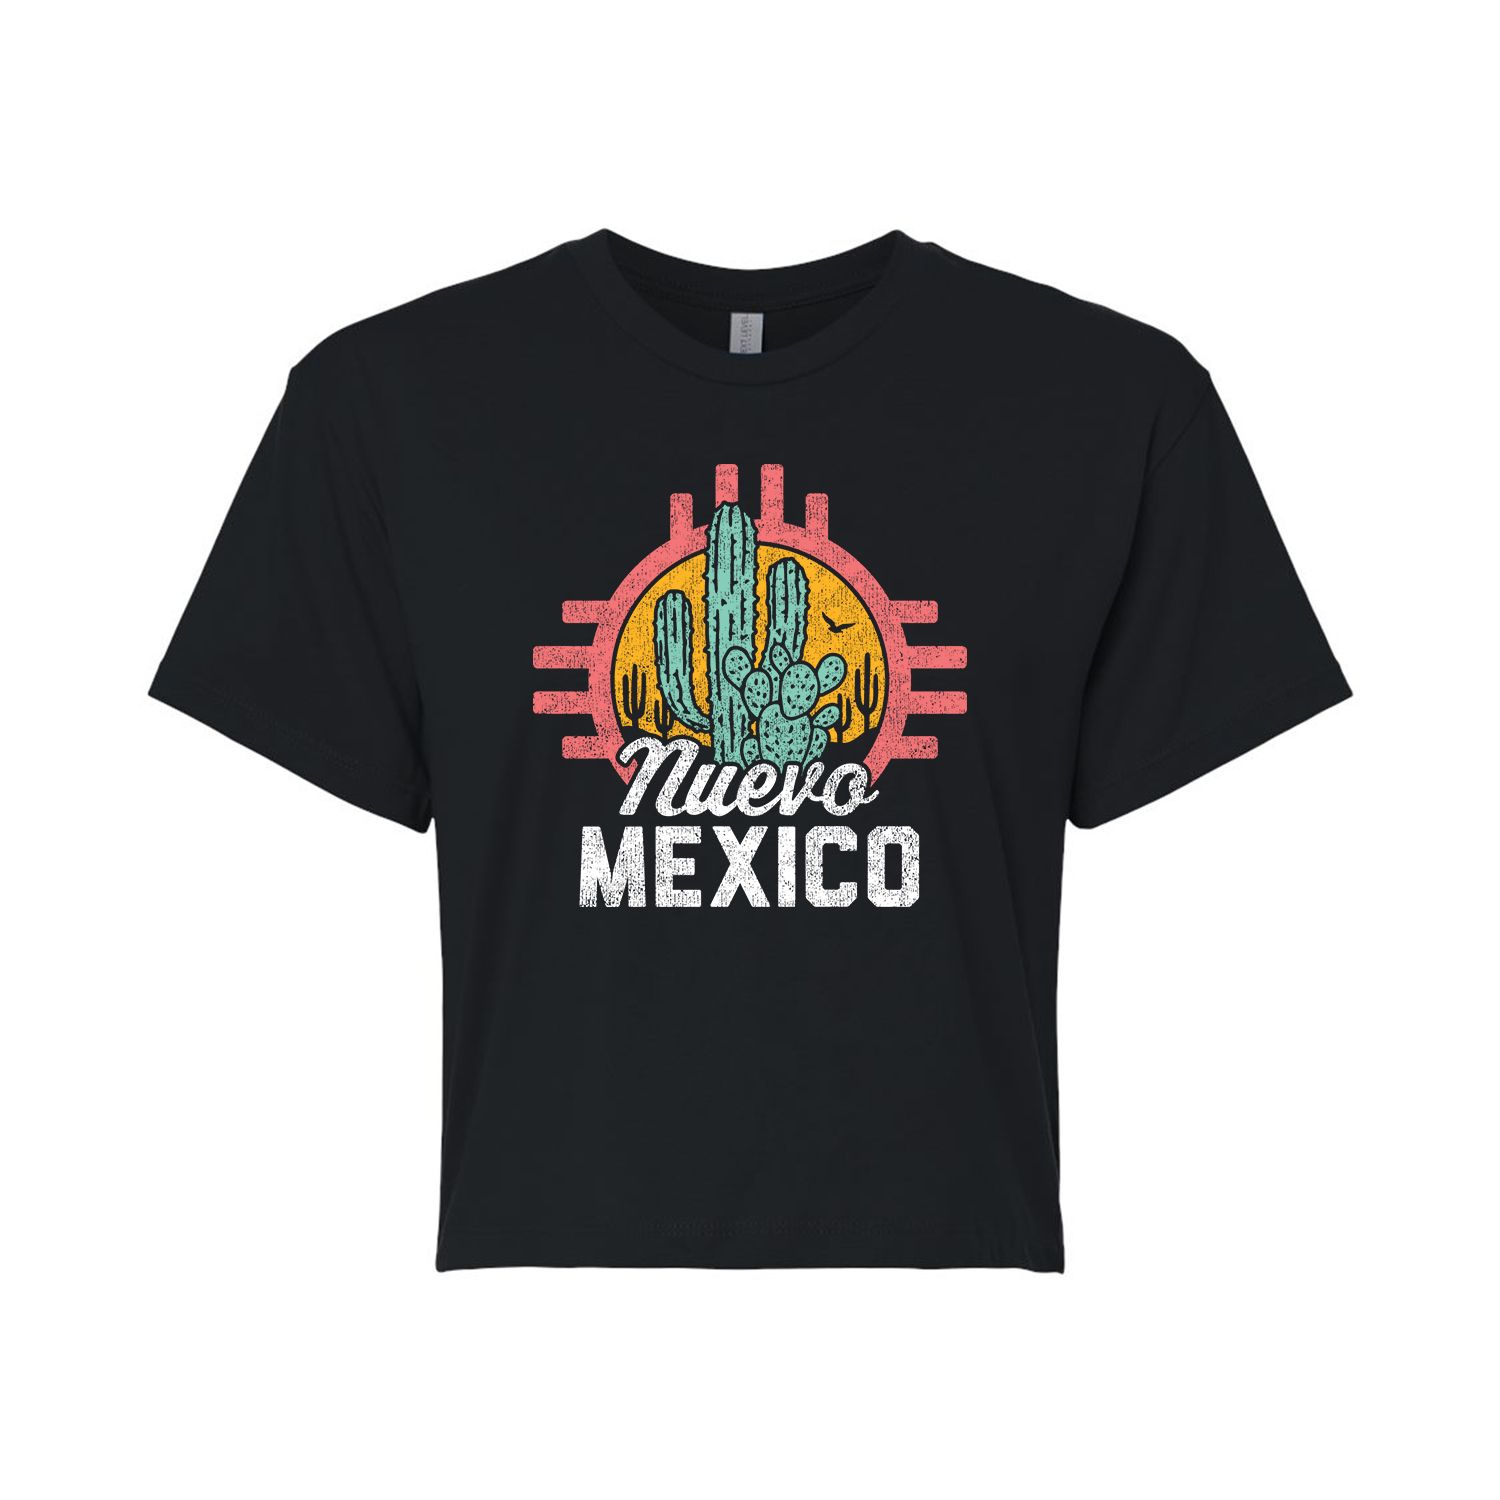 Укороченная футболка с рисунком Nuevo Mexico для юниоров Licensed Character